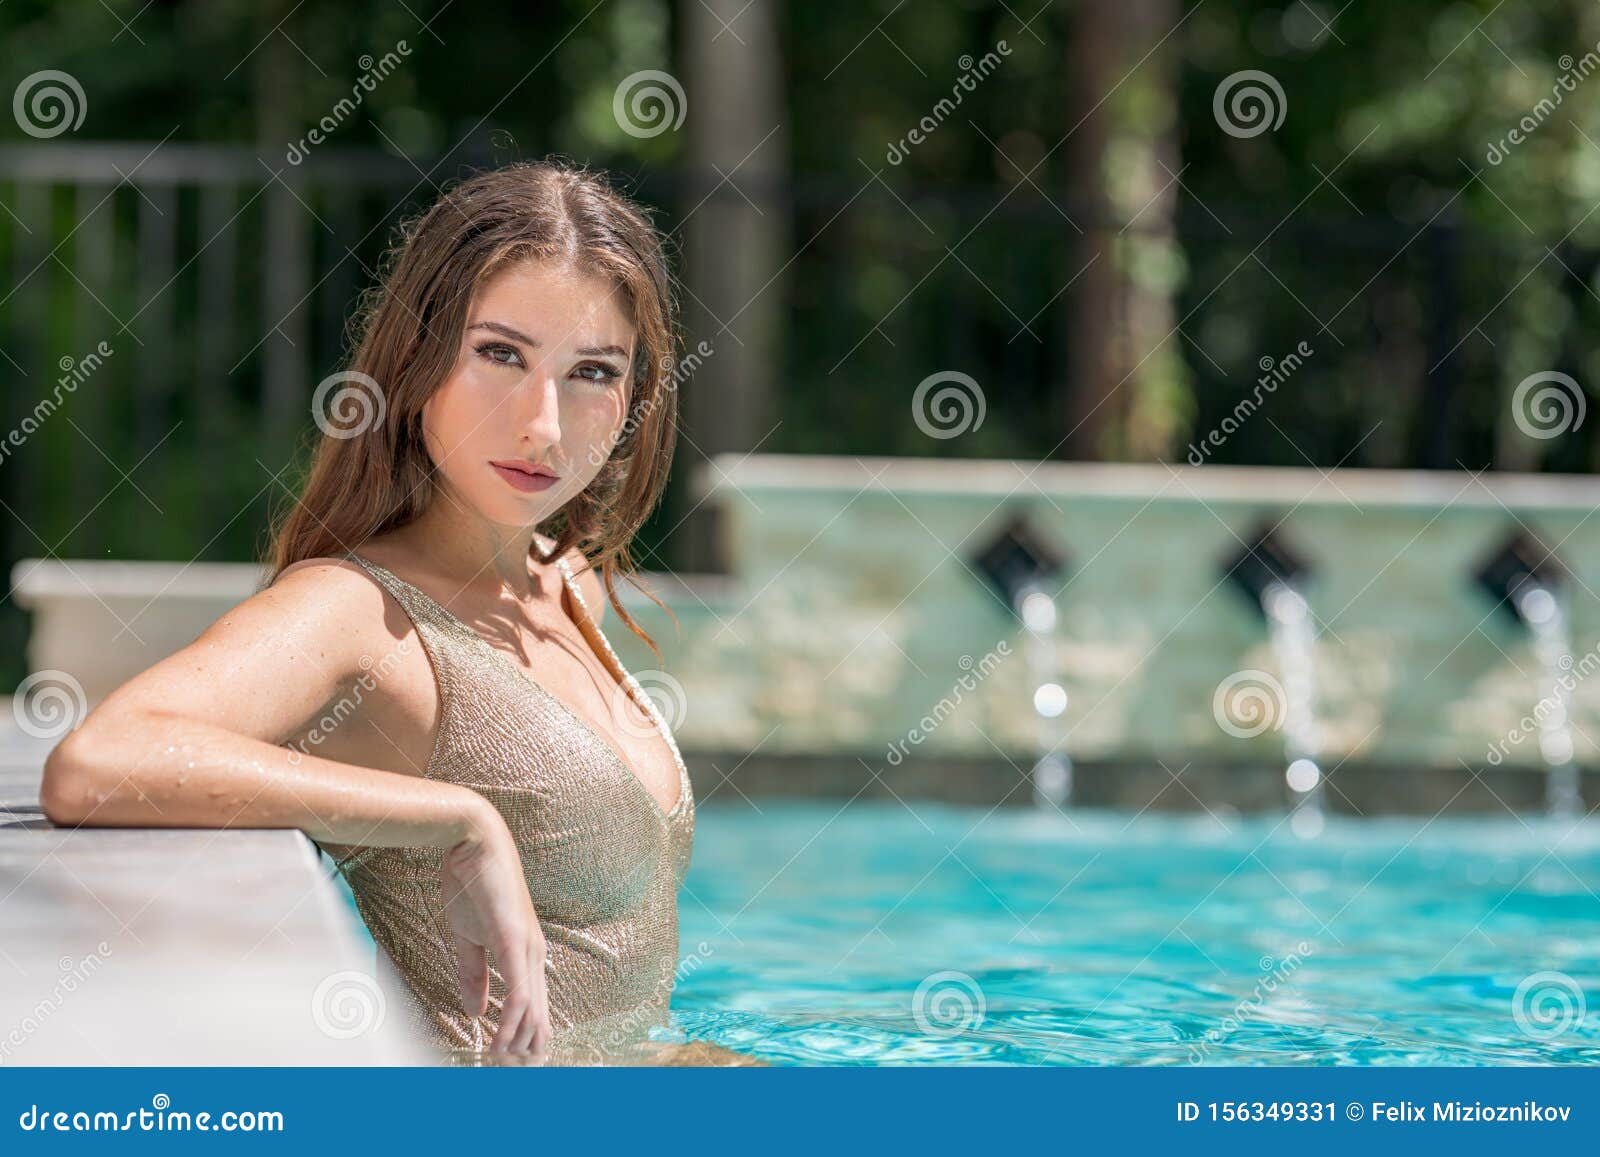 Зрелая дама с большой грудью позирует у бассейна